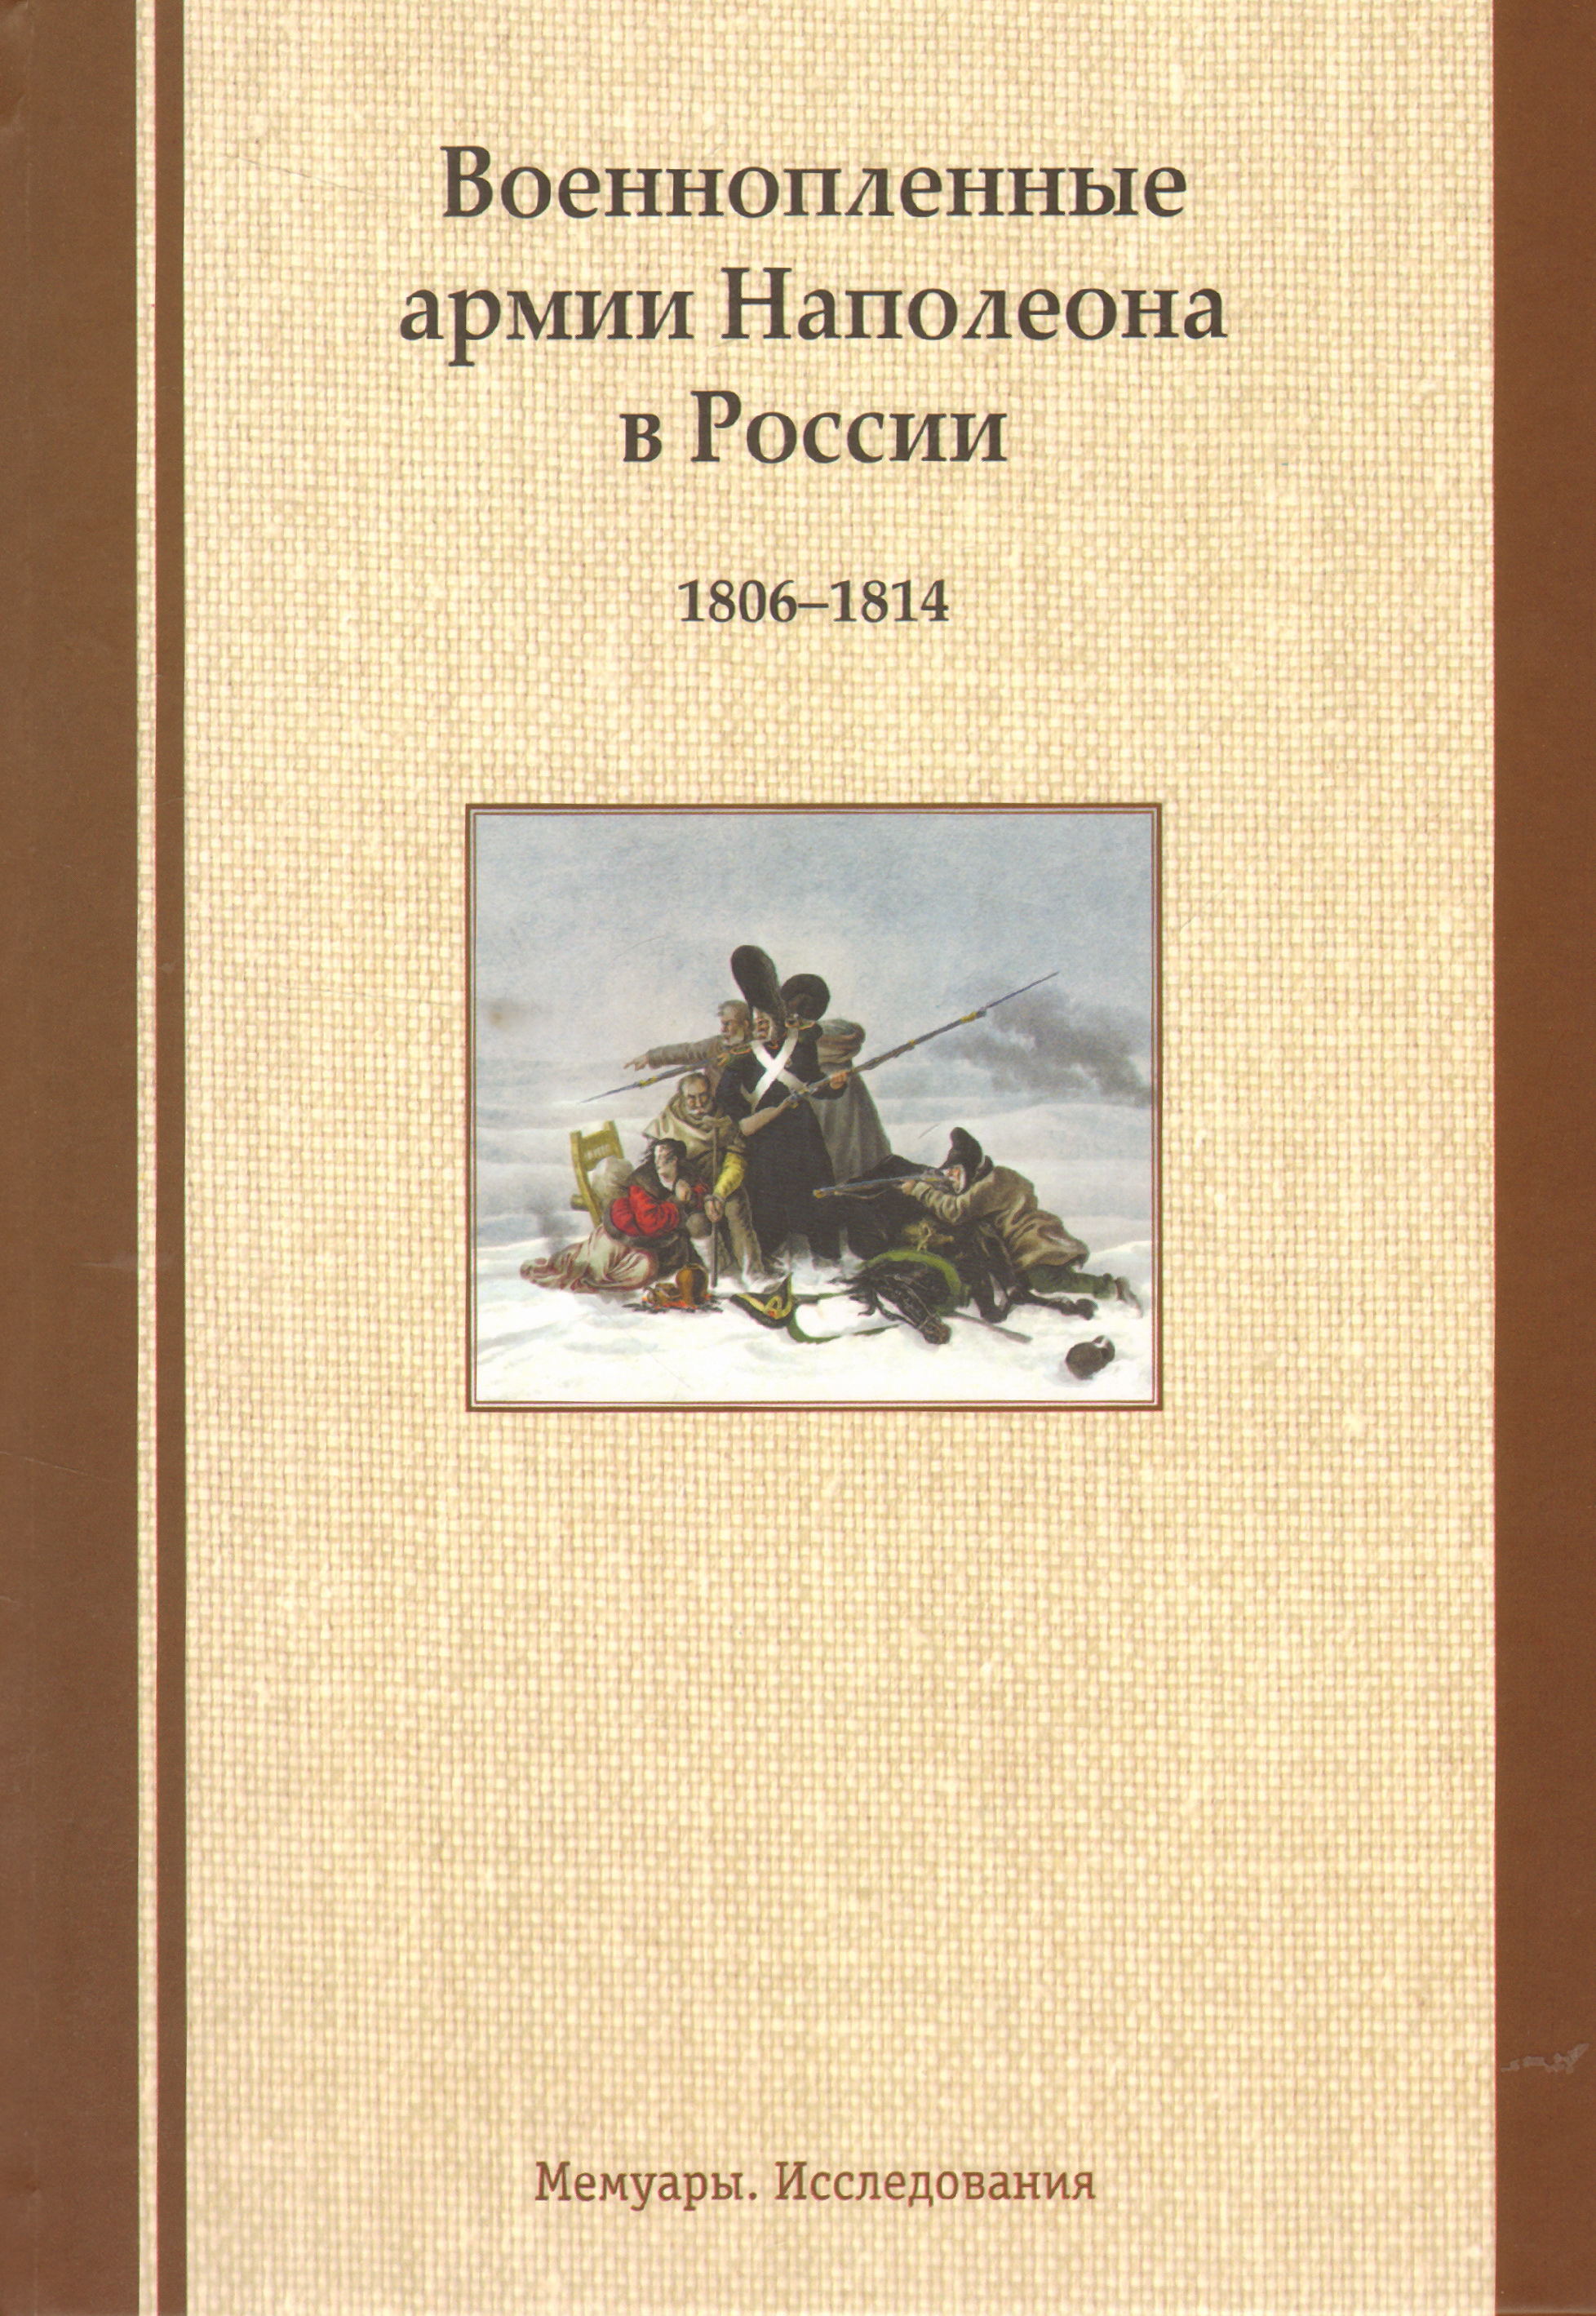 Военнопленные армии Наполеона в России 1806-1814.Мемуары.Исследования